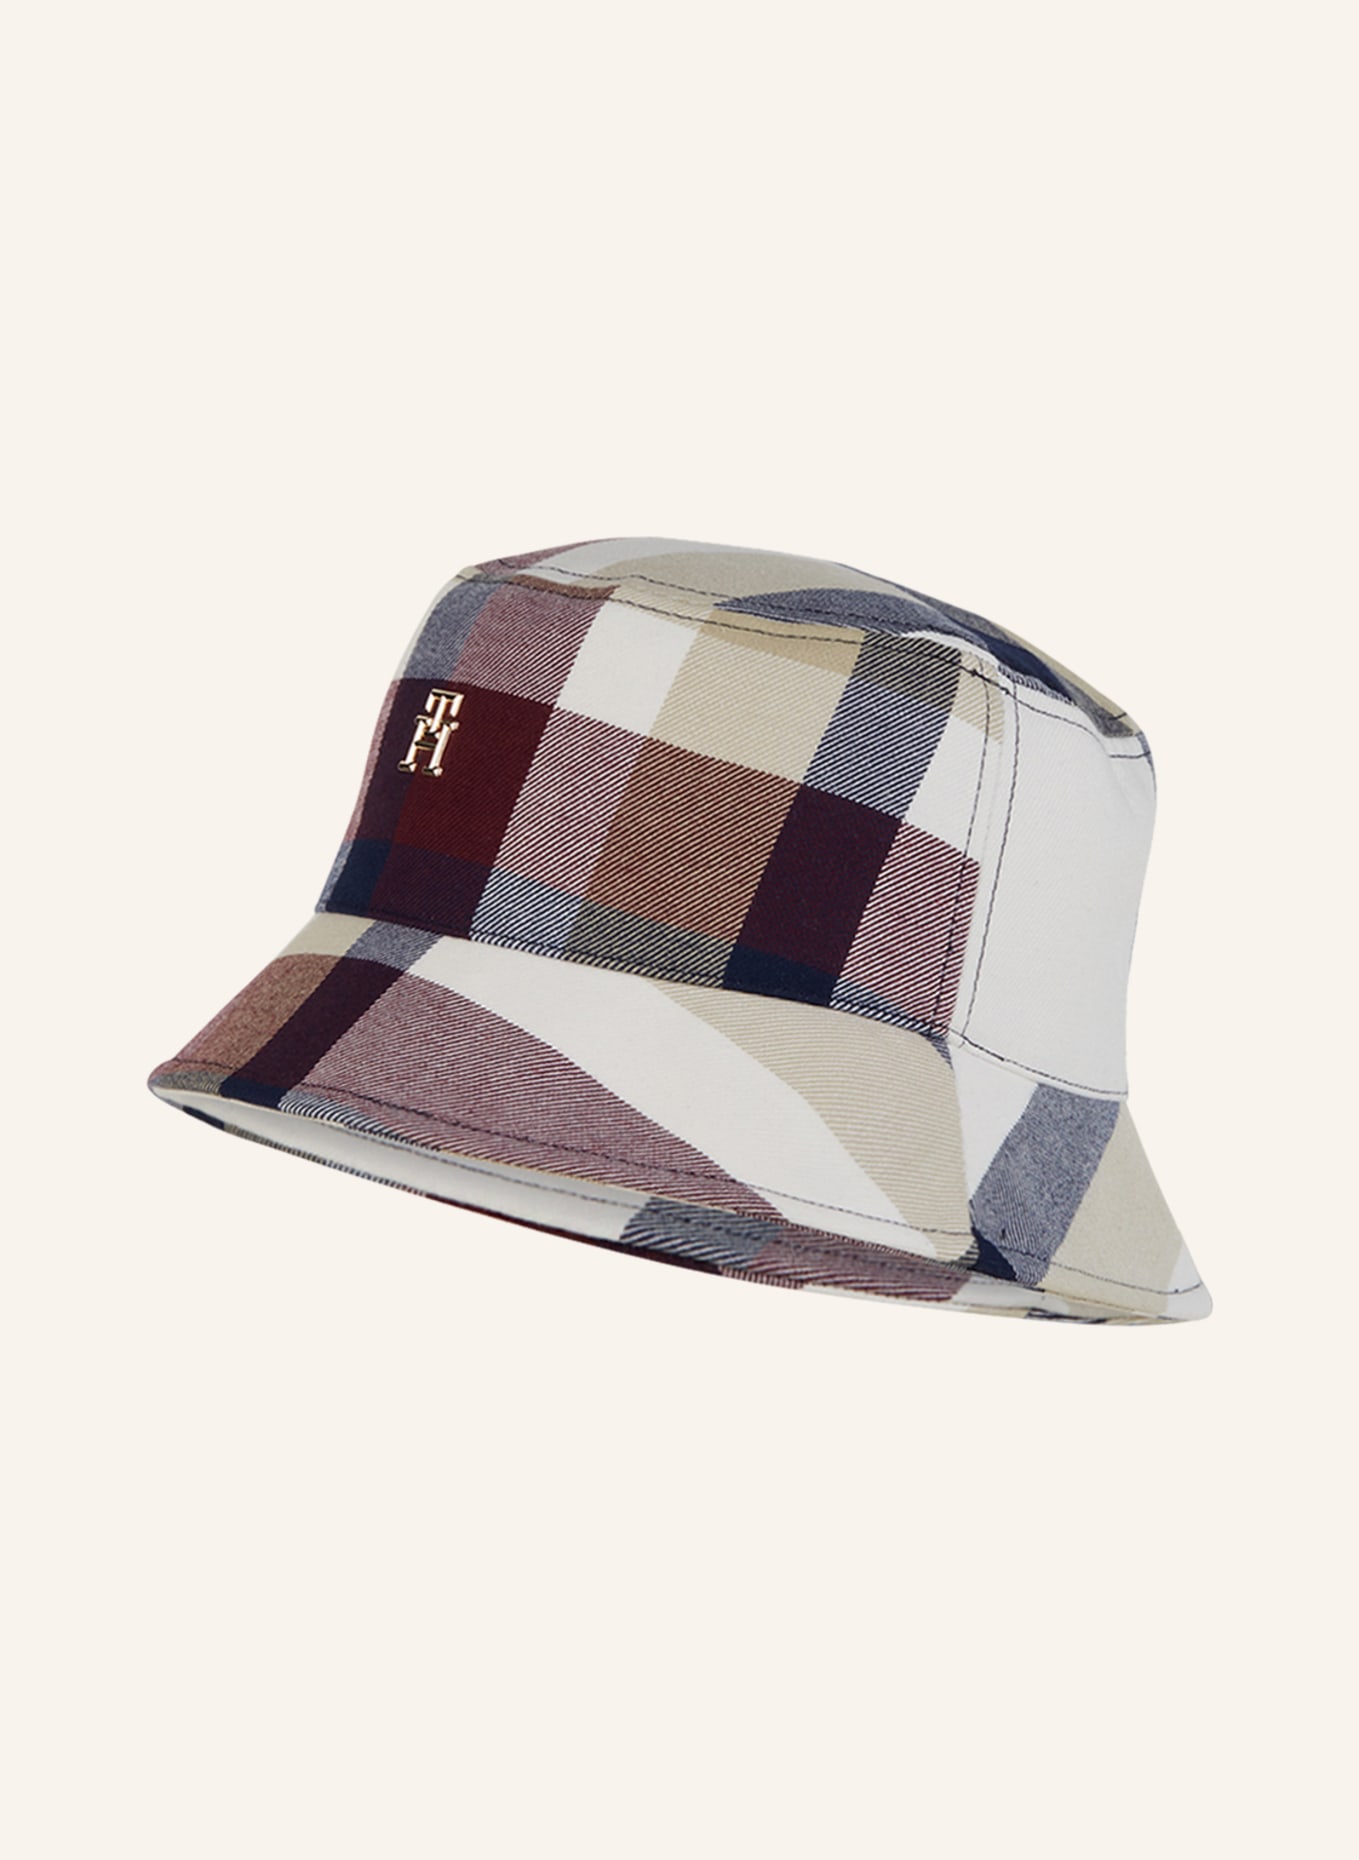 TOMMY HILFIGER Bucket-Hat, Farbe: WEISS/ DUNKELBLAU/ DUNKELROT (Bild 1)